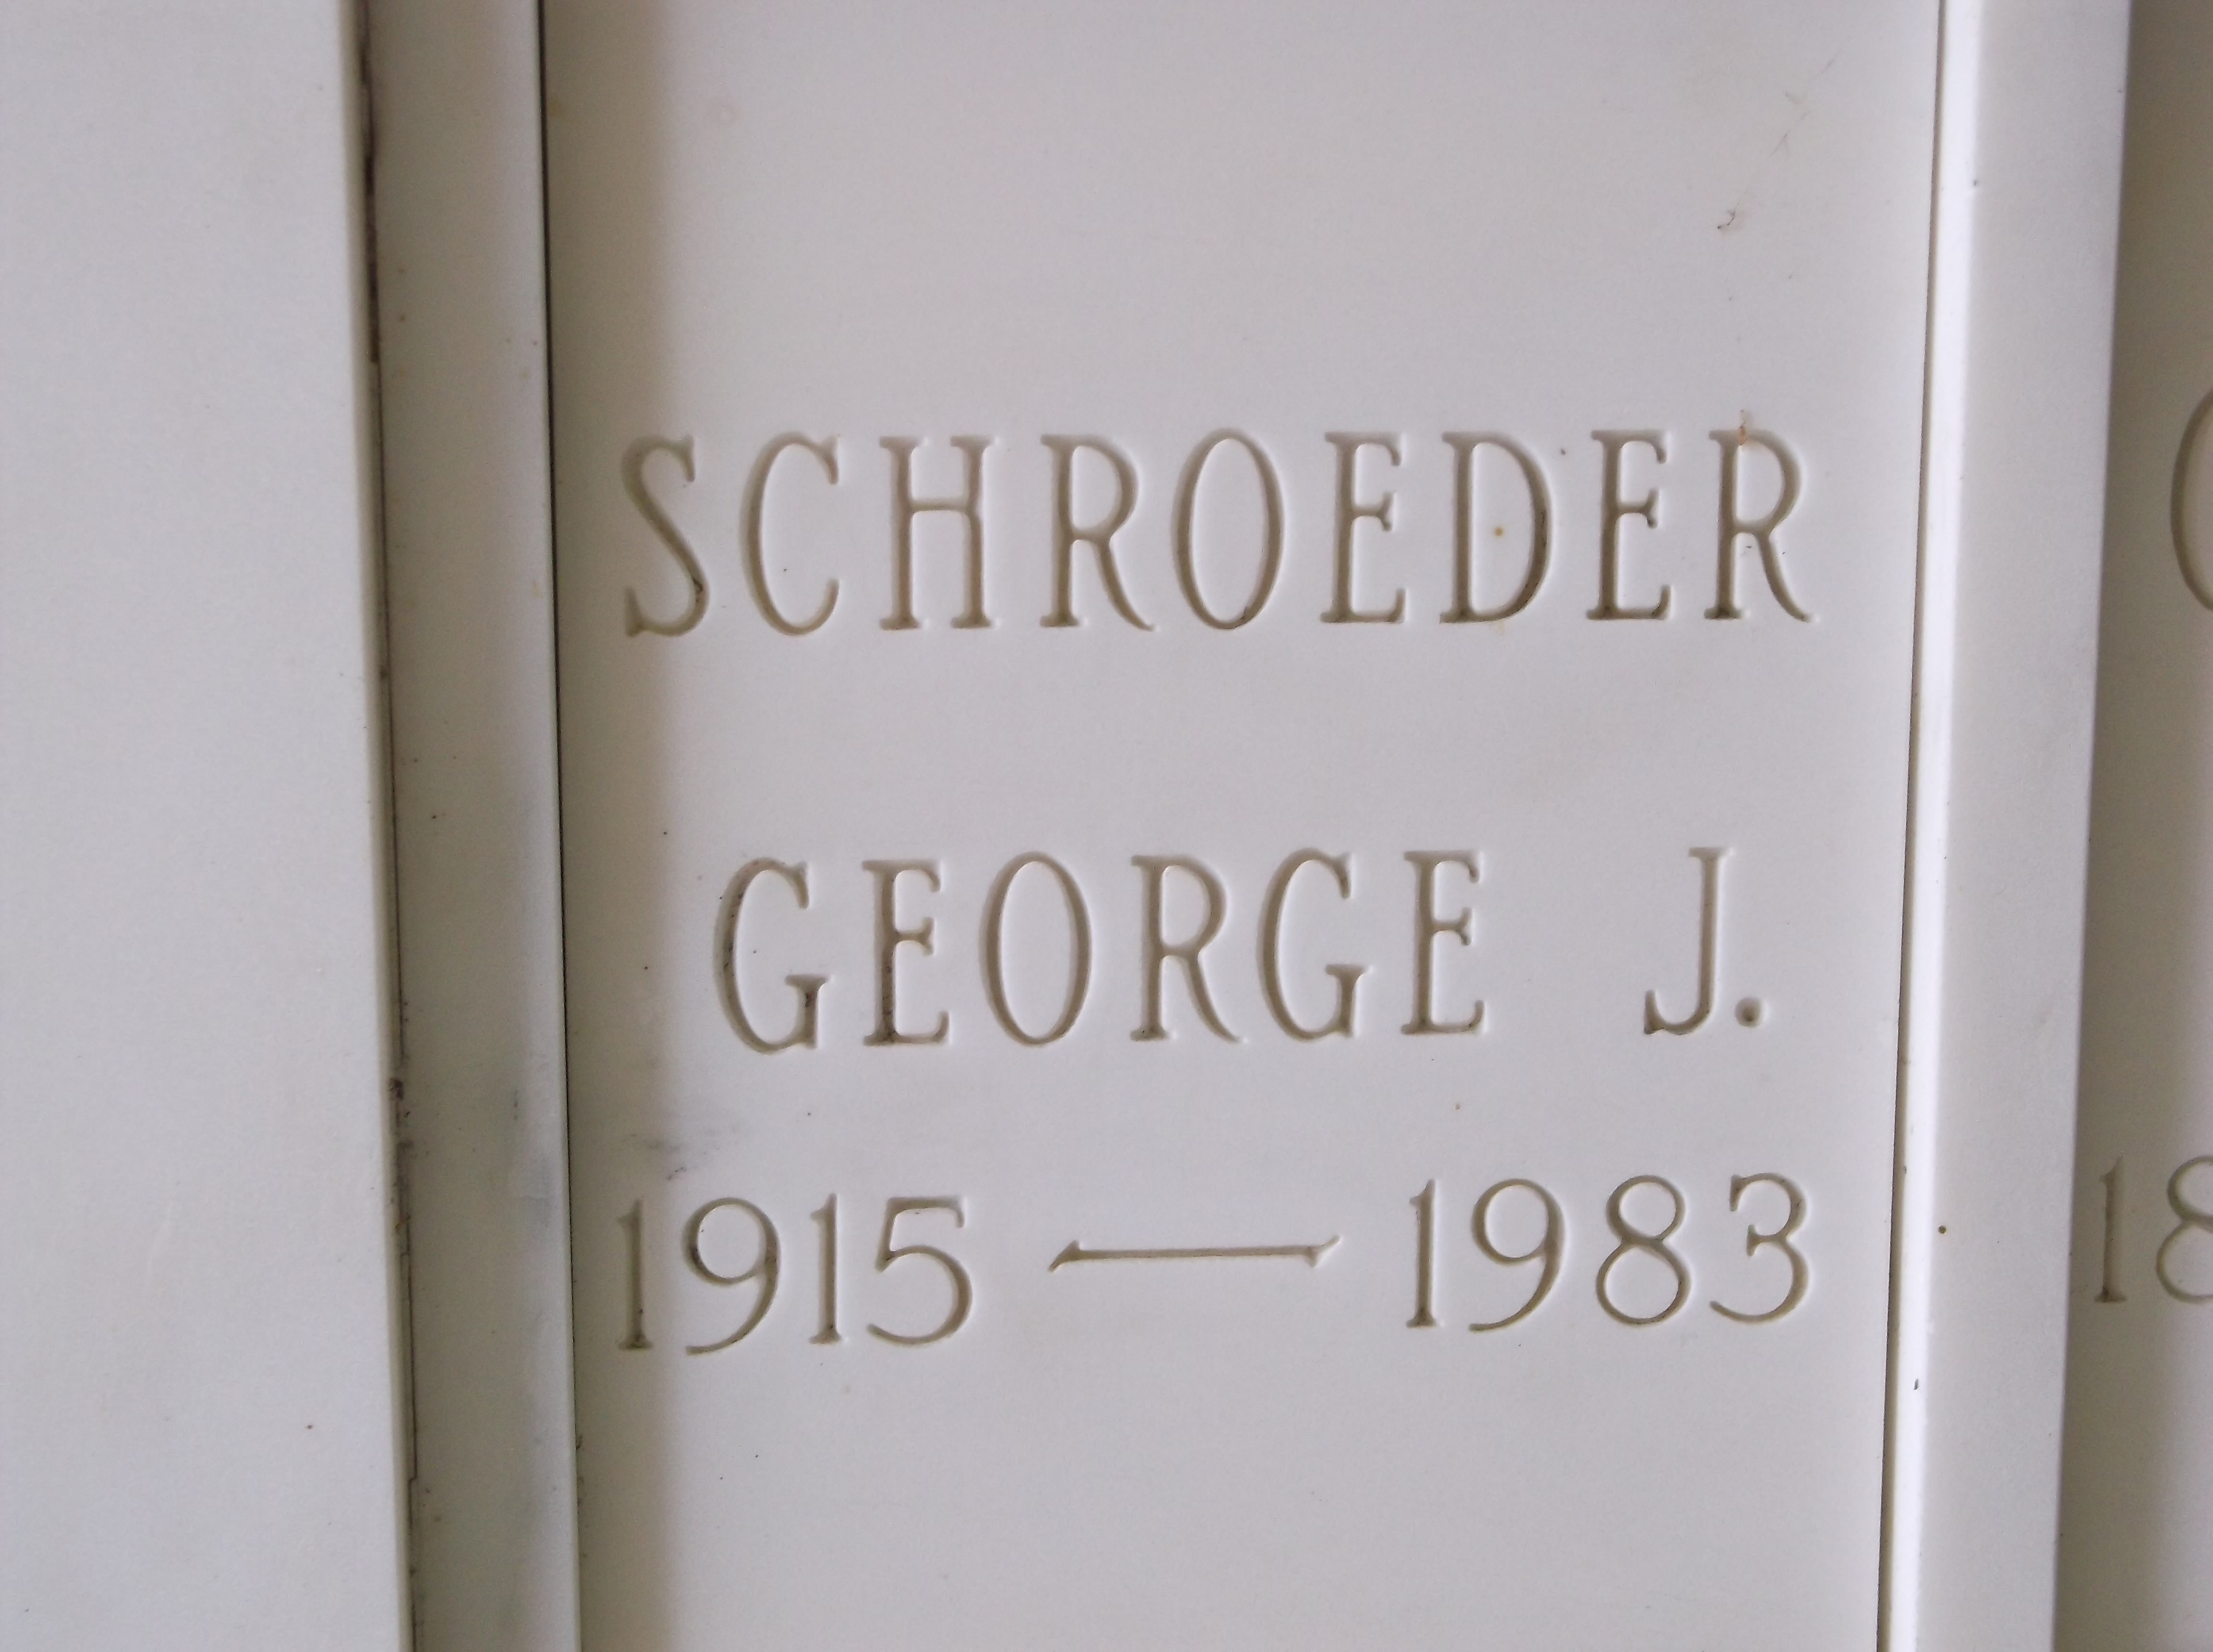 George J Schroeder